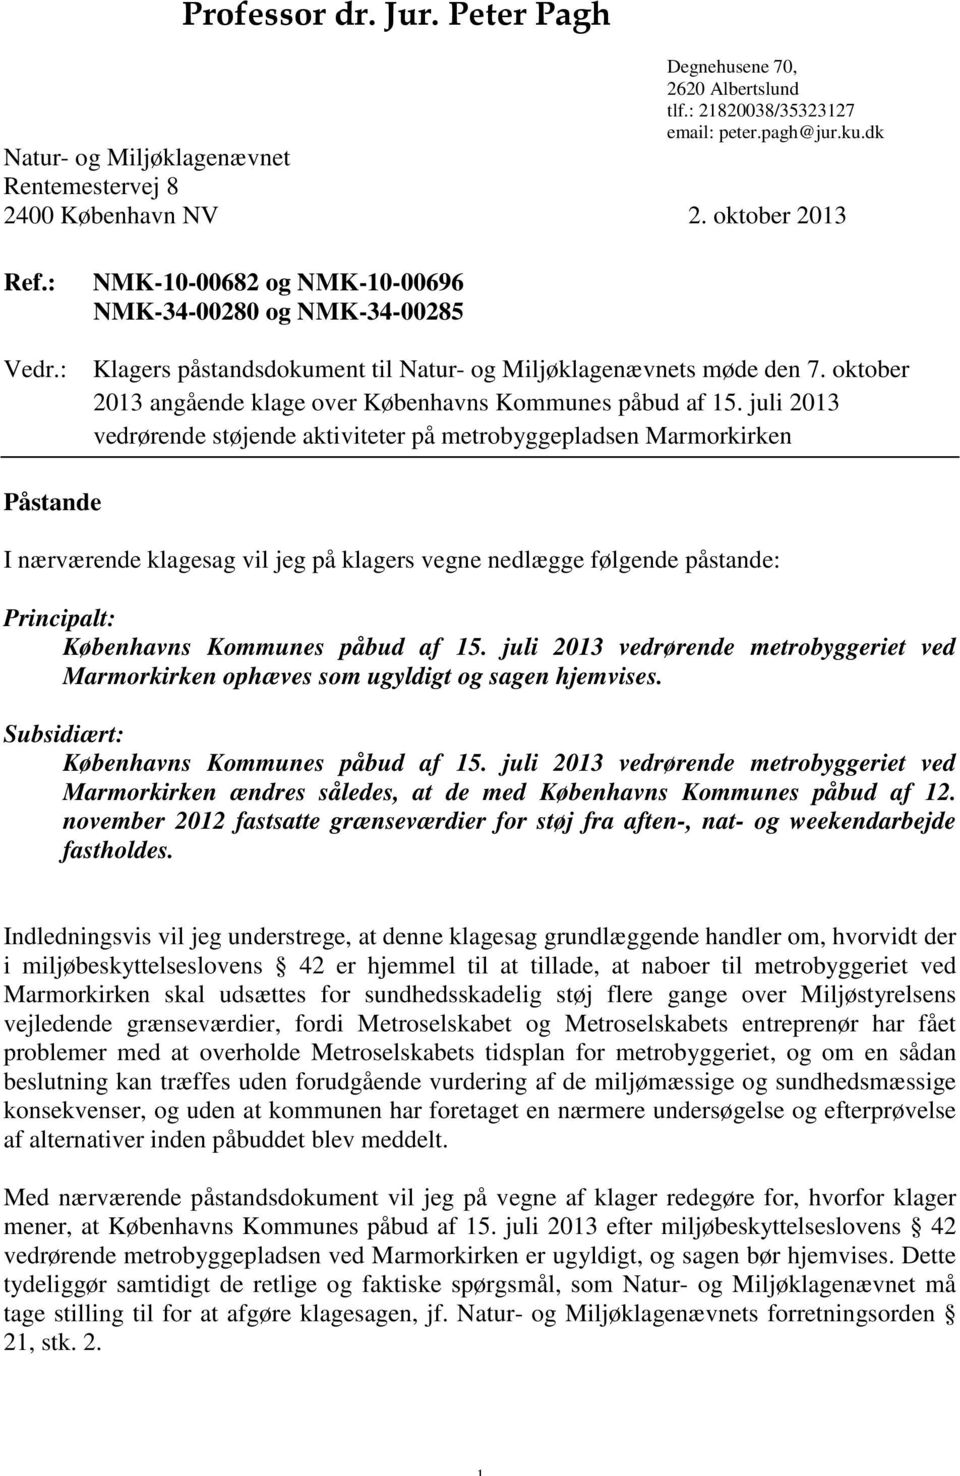 oktober 2013 angående klage over Københavns Kommunes påbud af 15.